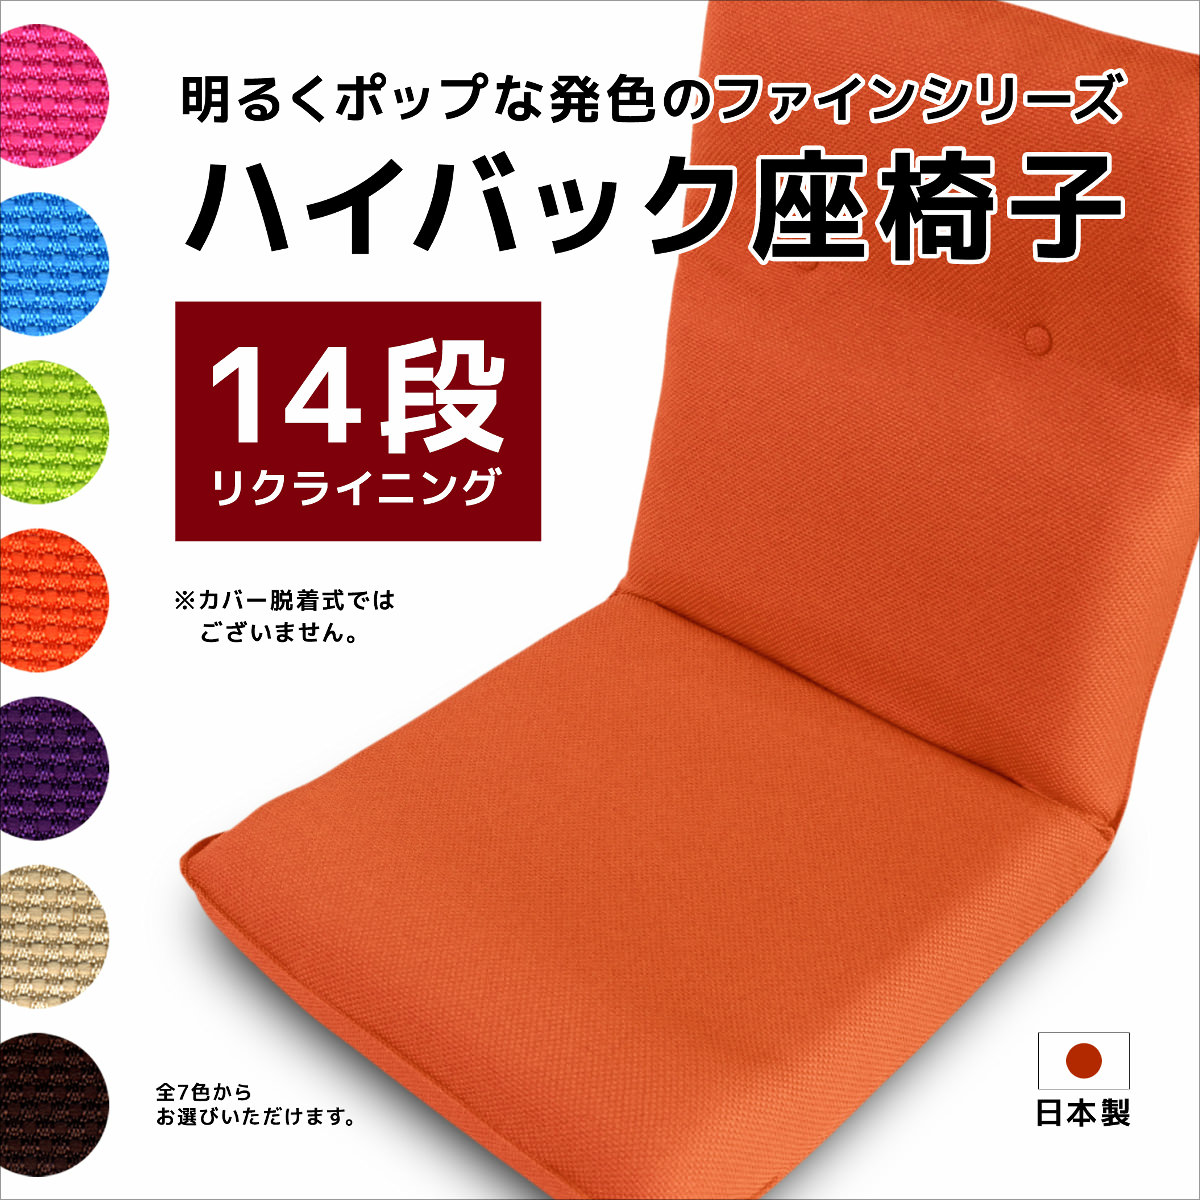 楽天市場 ハイバック座椅子 ファイン 座いす 座イス 14段階リクライニング フロアチェアー 日本製 クッション専門店 ツルショウ